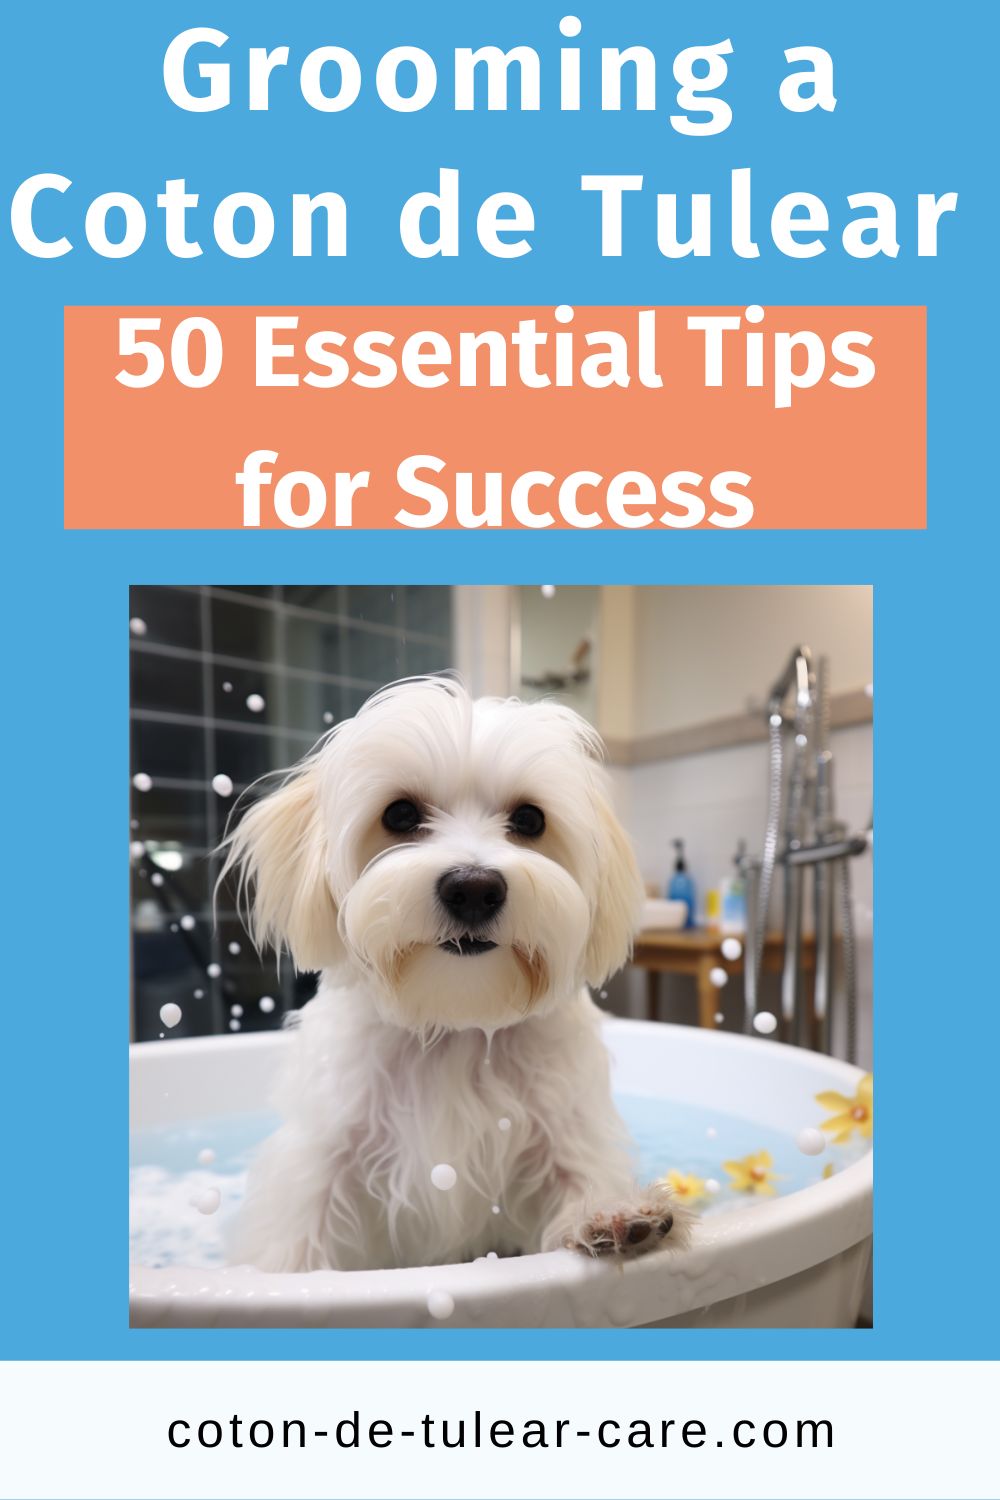 50 tips for grooming a Coton de Tulear